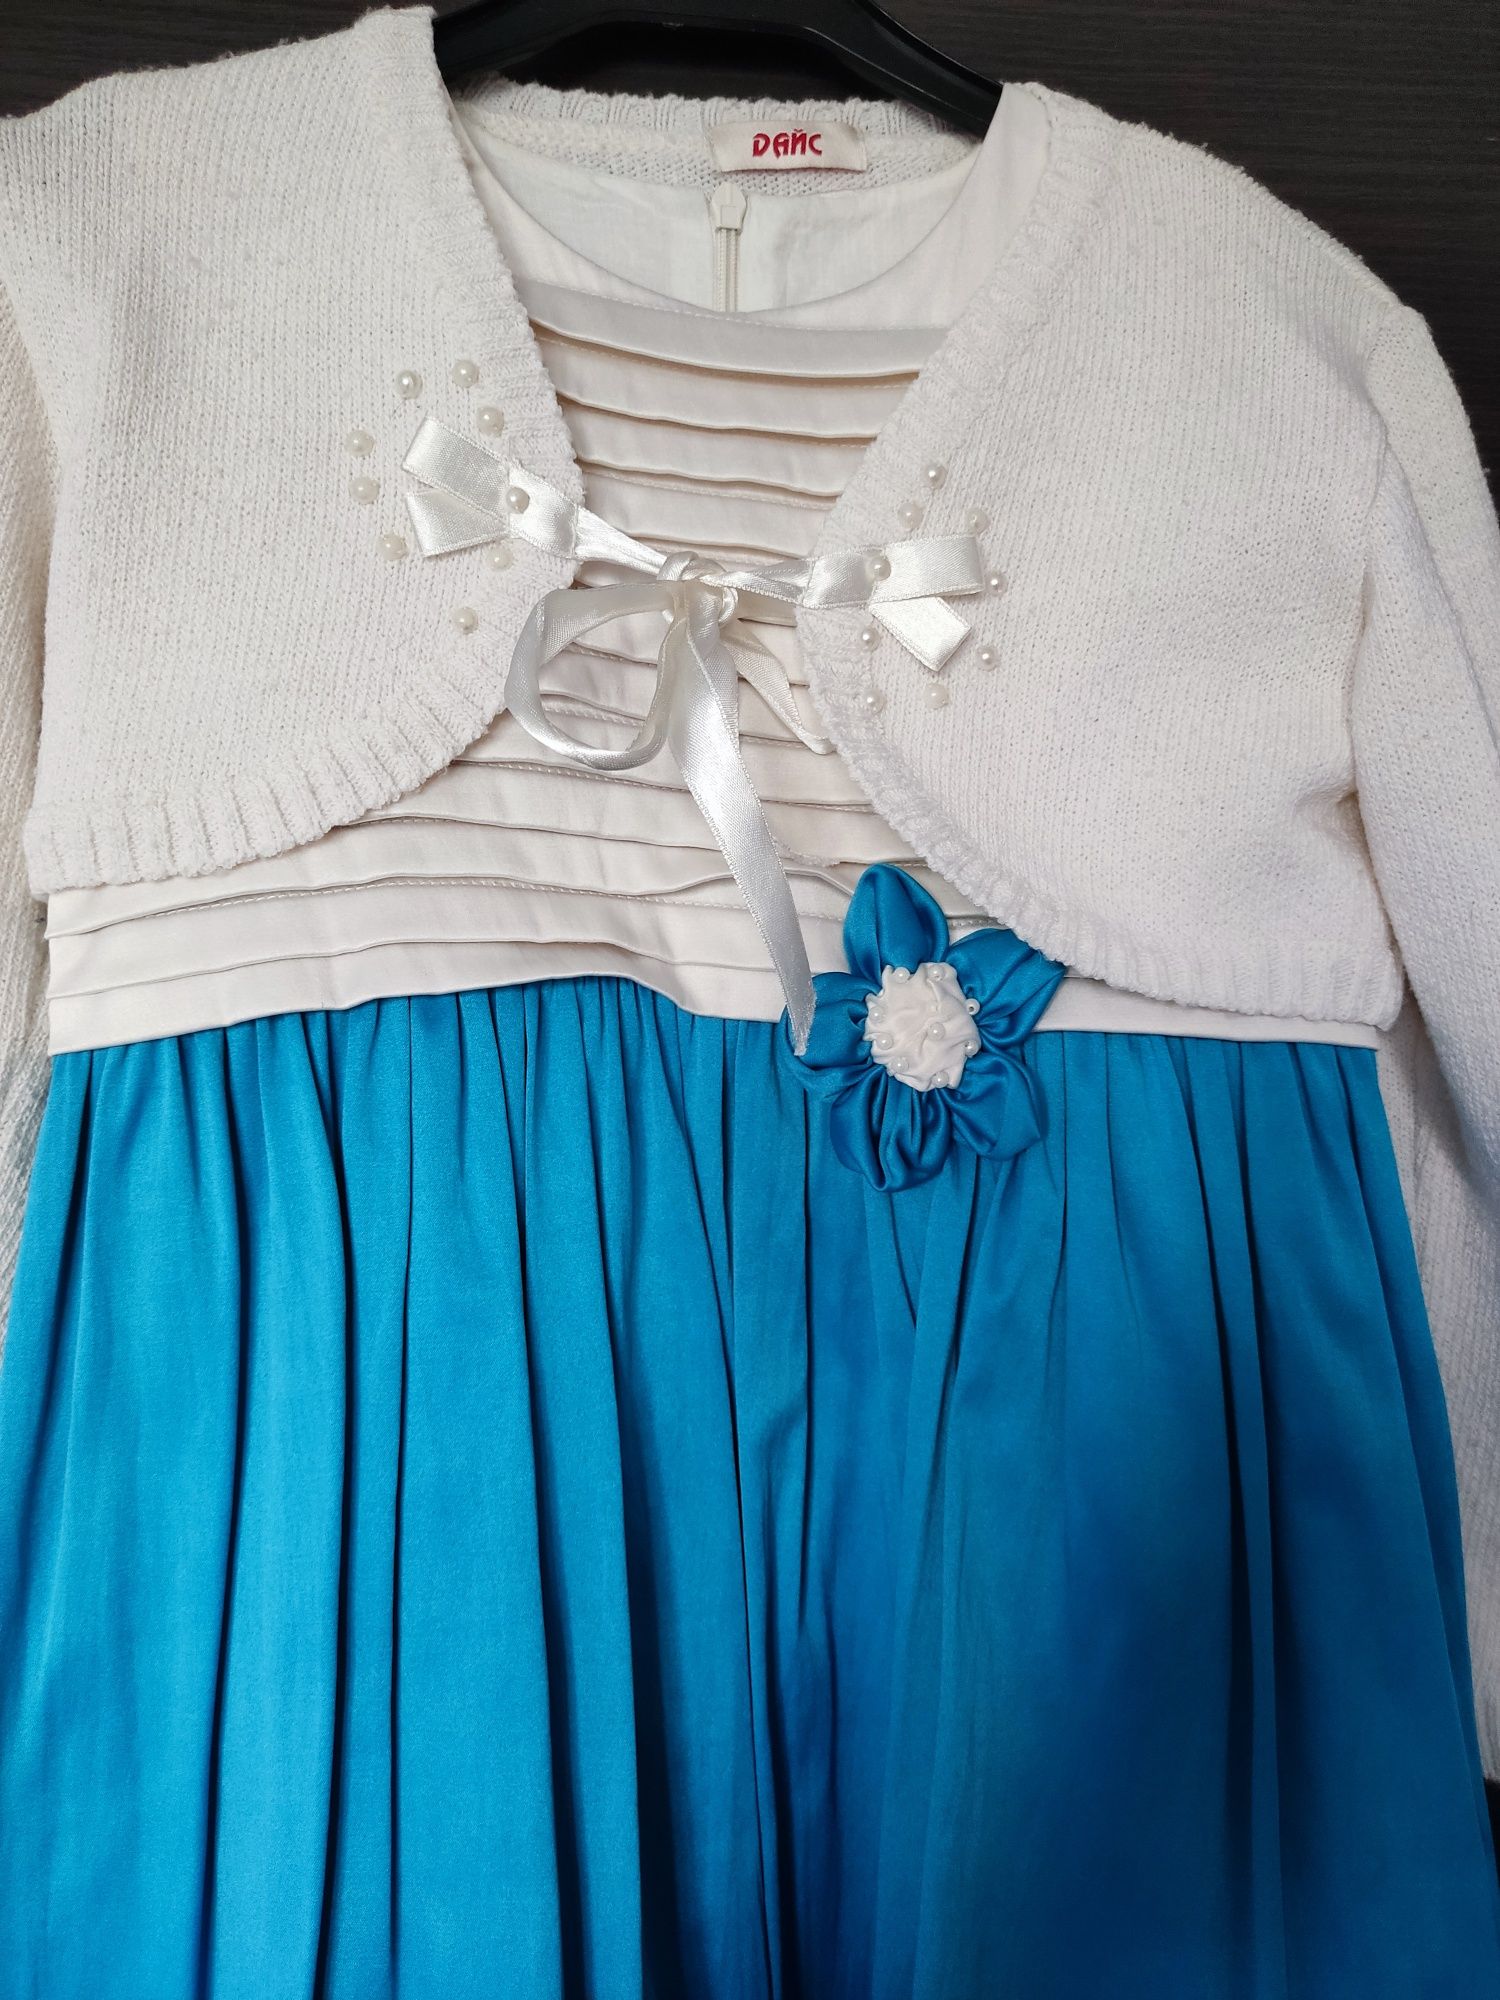 Святкове плаття, новорічна нарядна сукня з болеро для дівчинки